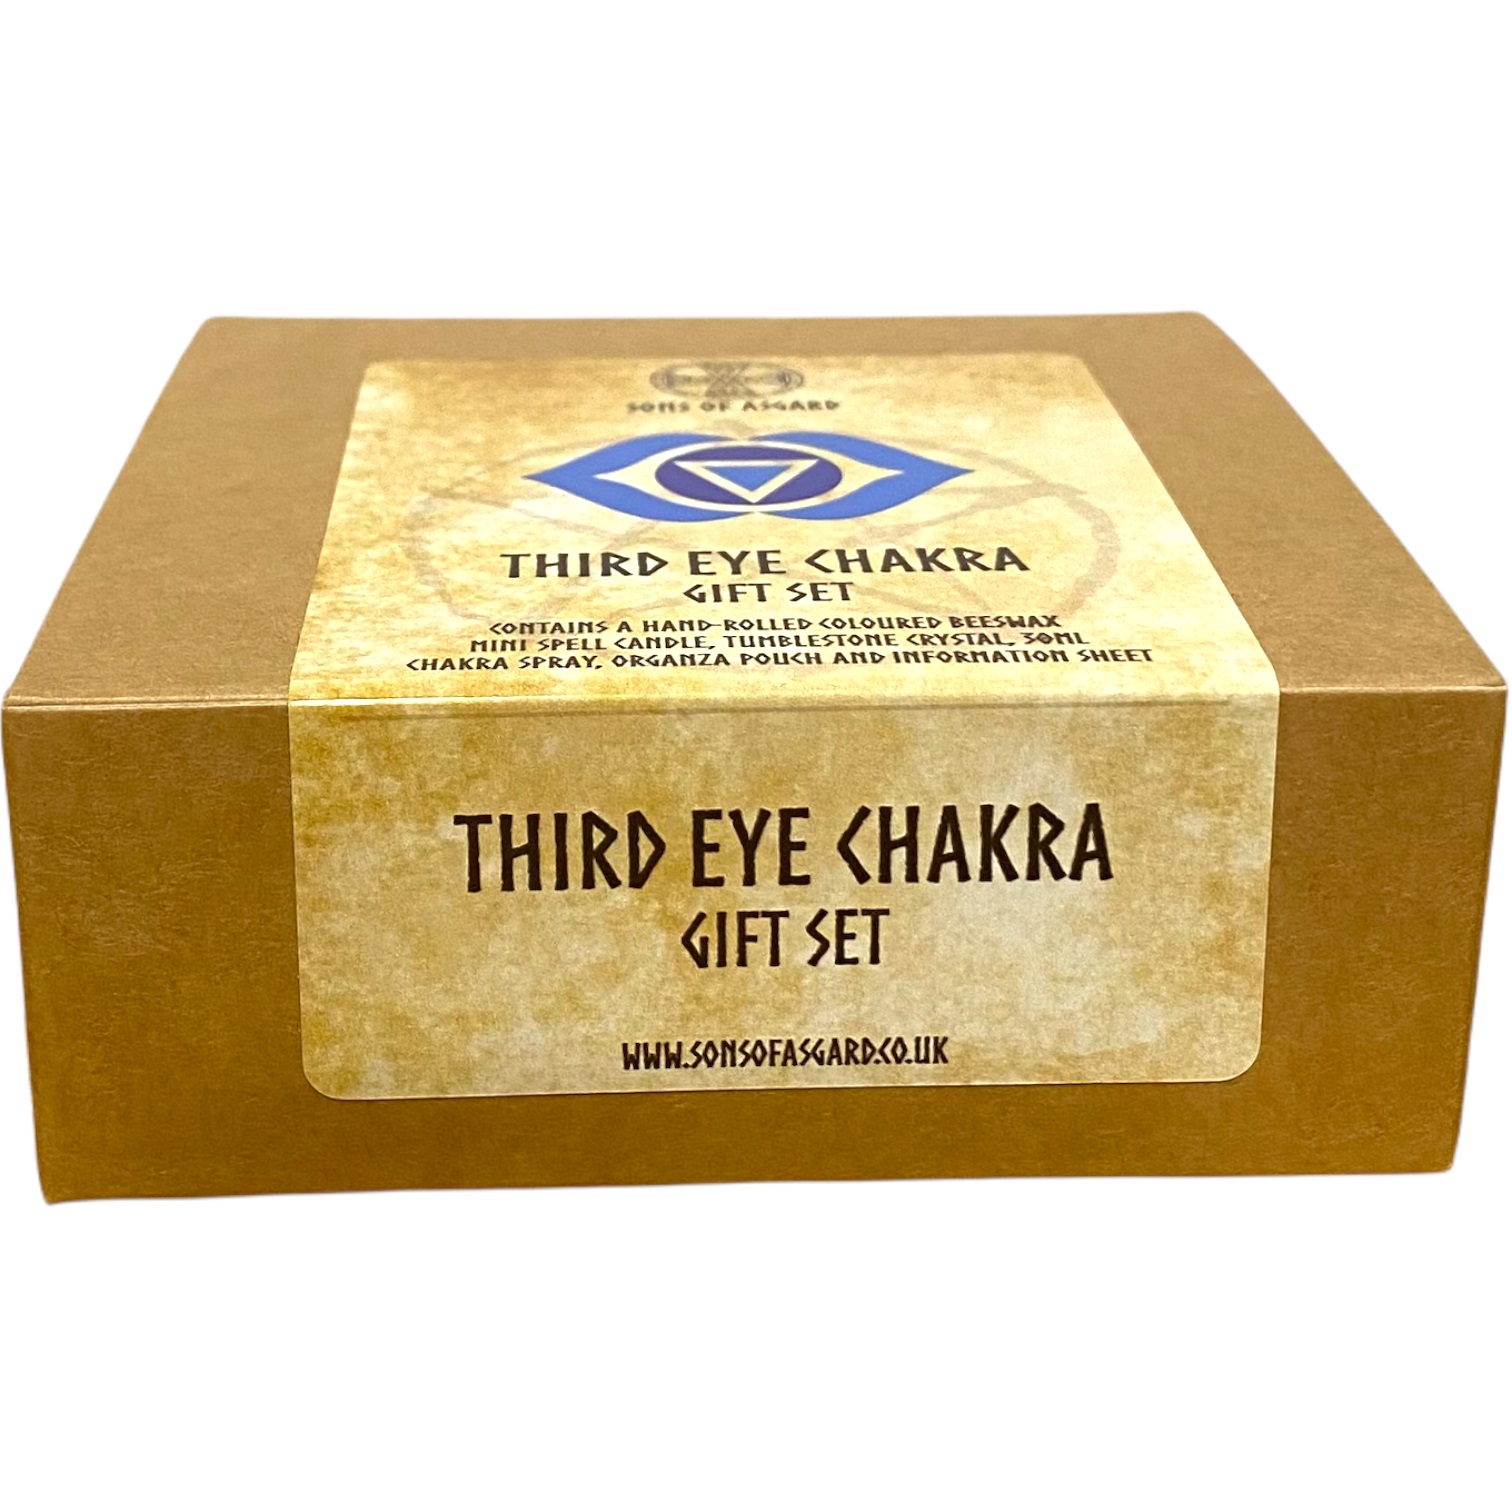 Third Eye Chakra - Gift Set